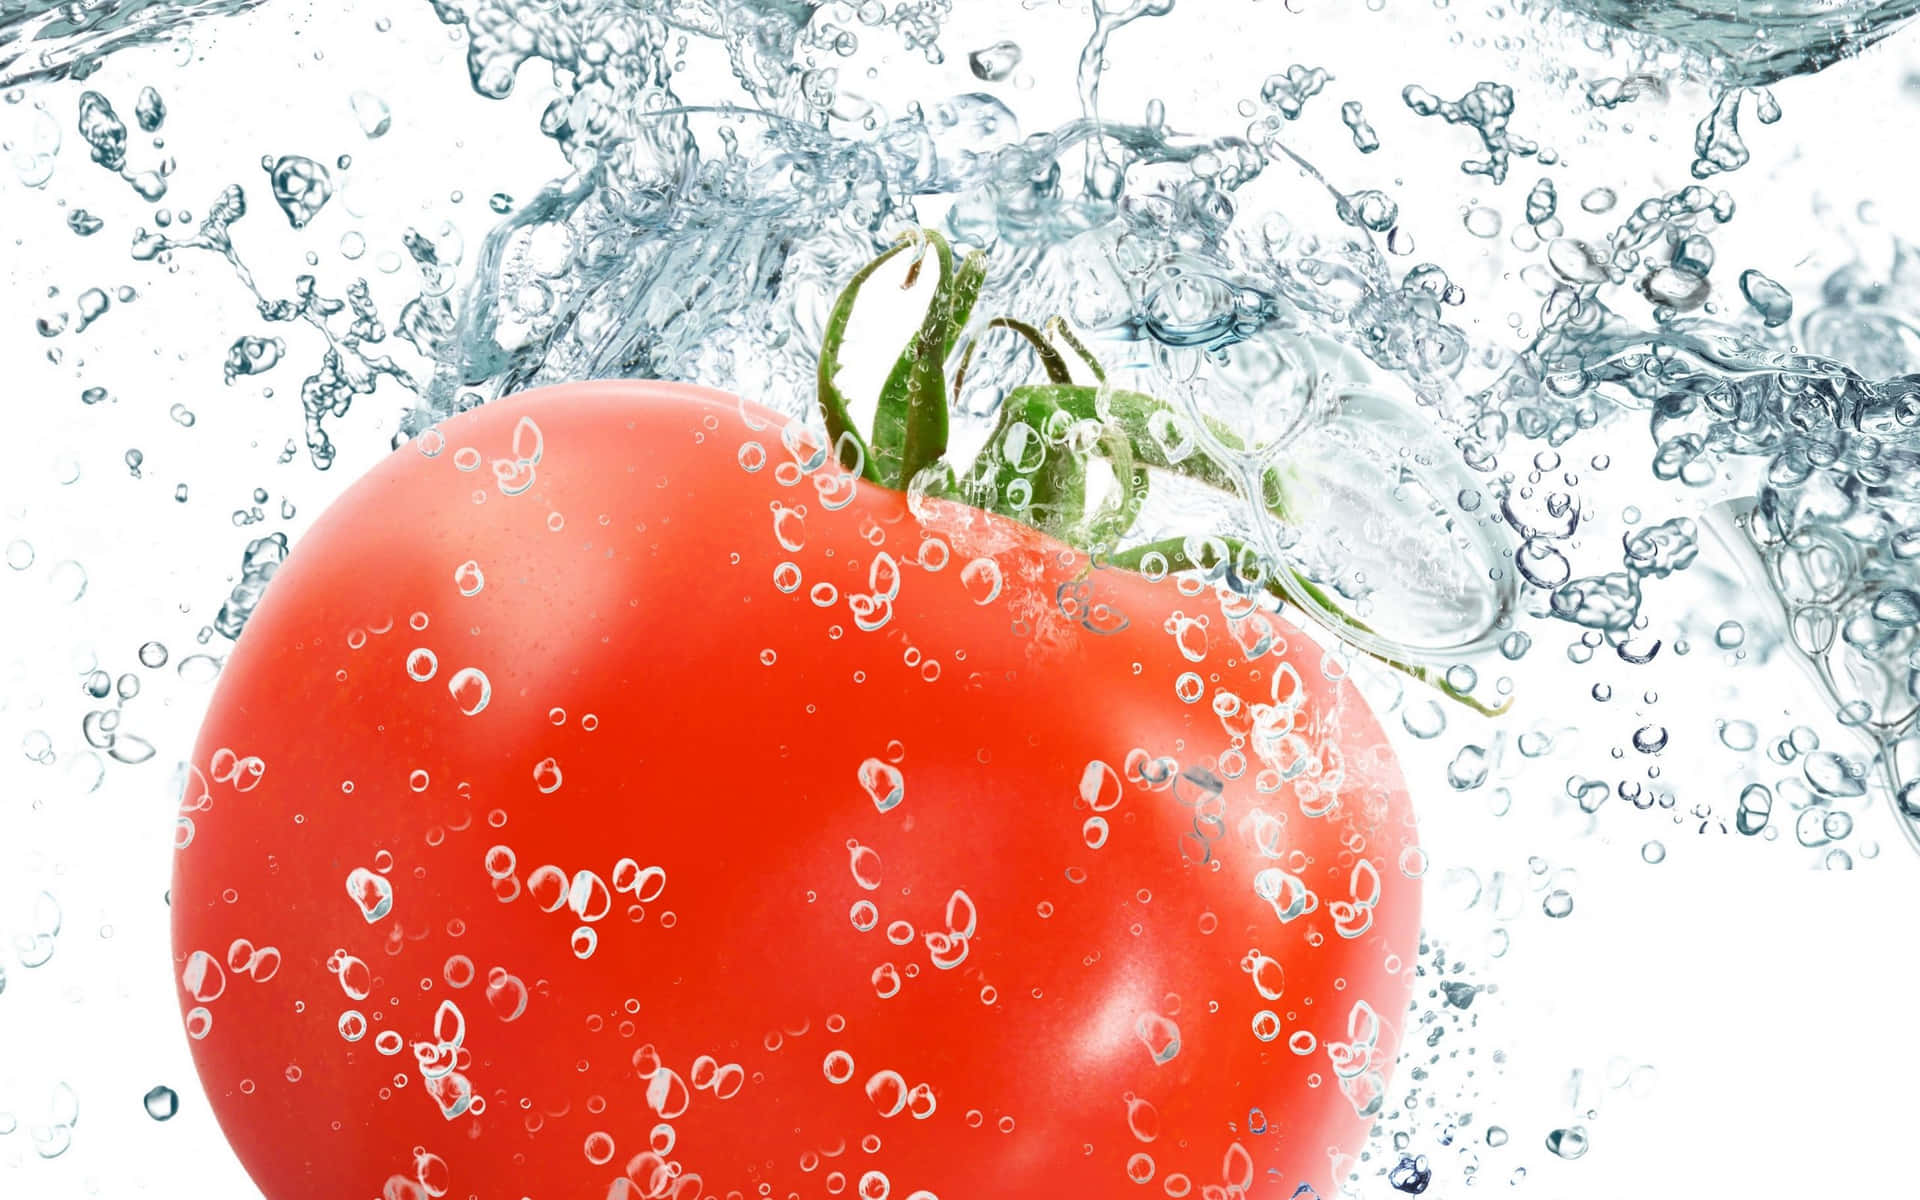 A sun-ripened red tomato